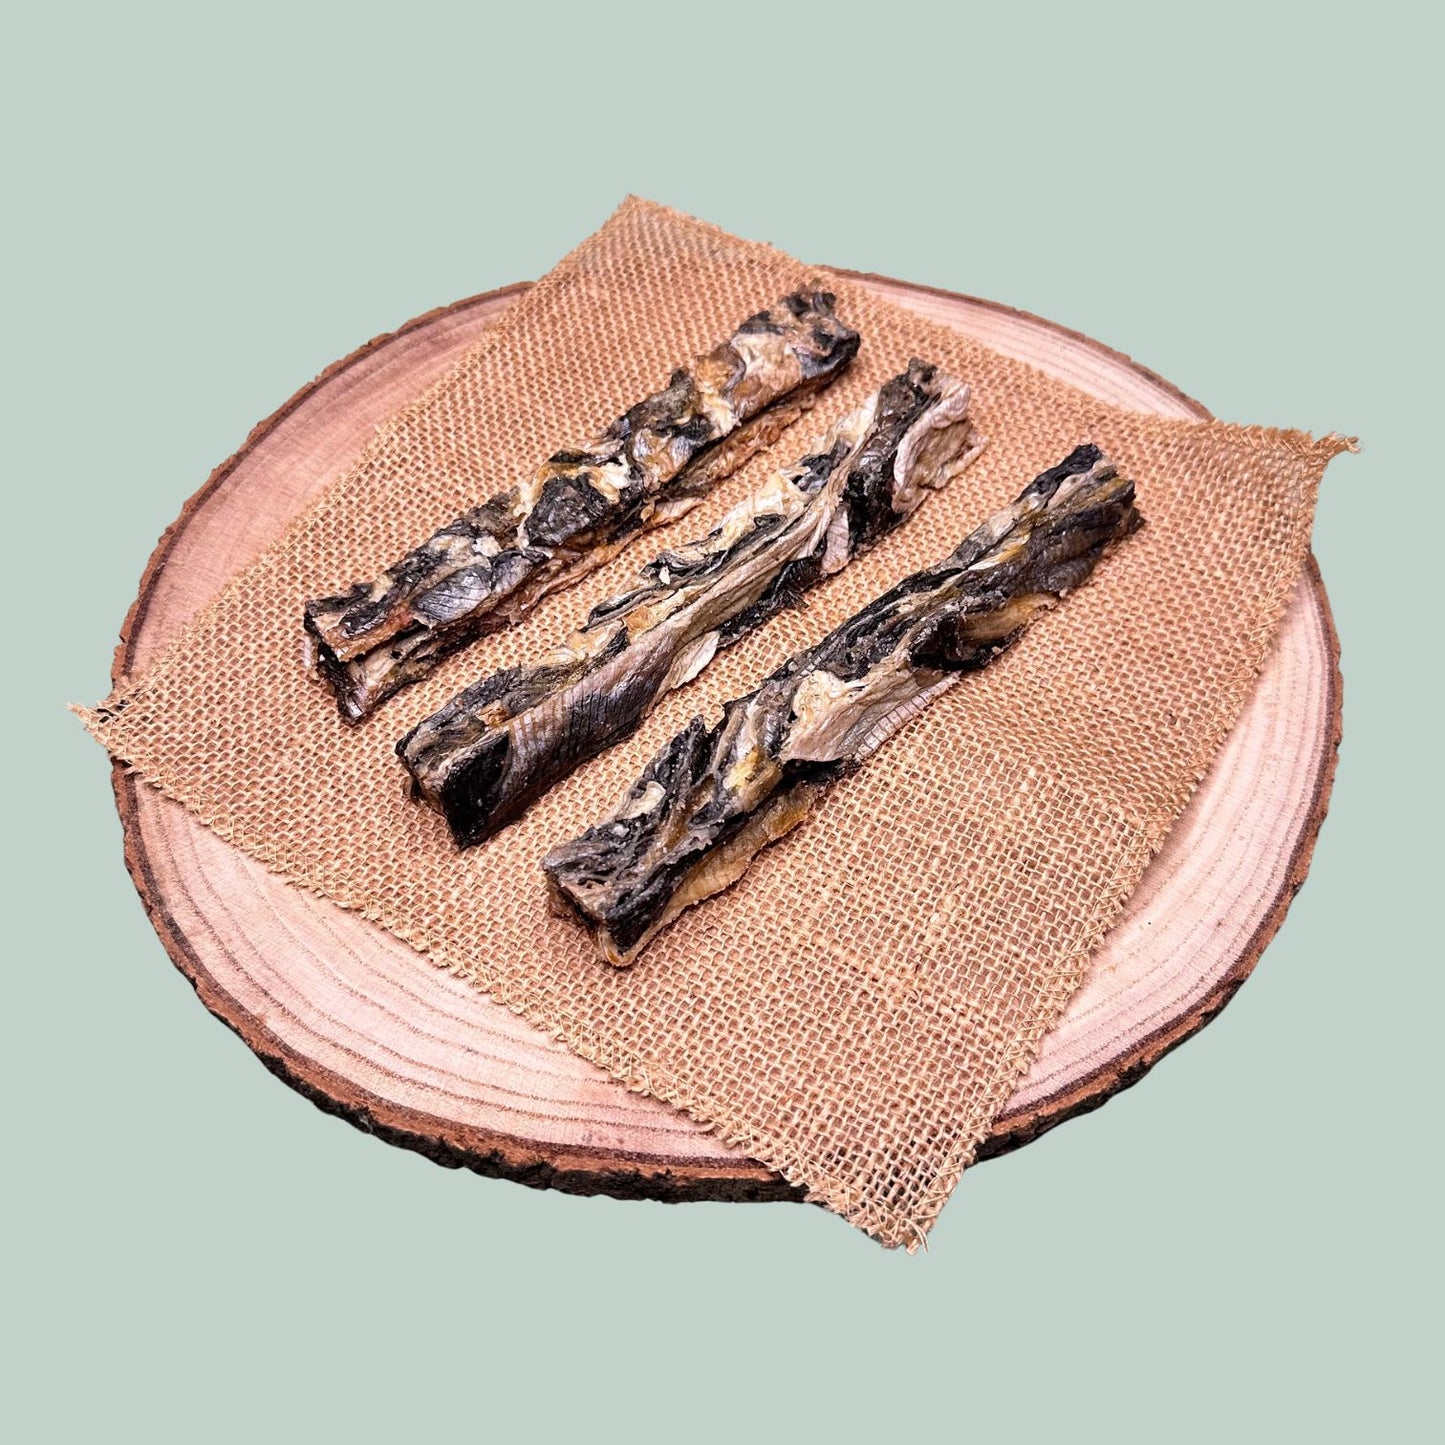 3 dried fish finger dog treats made from natural basa fish skin